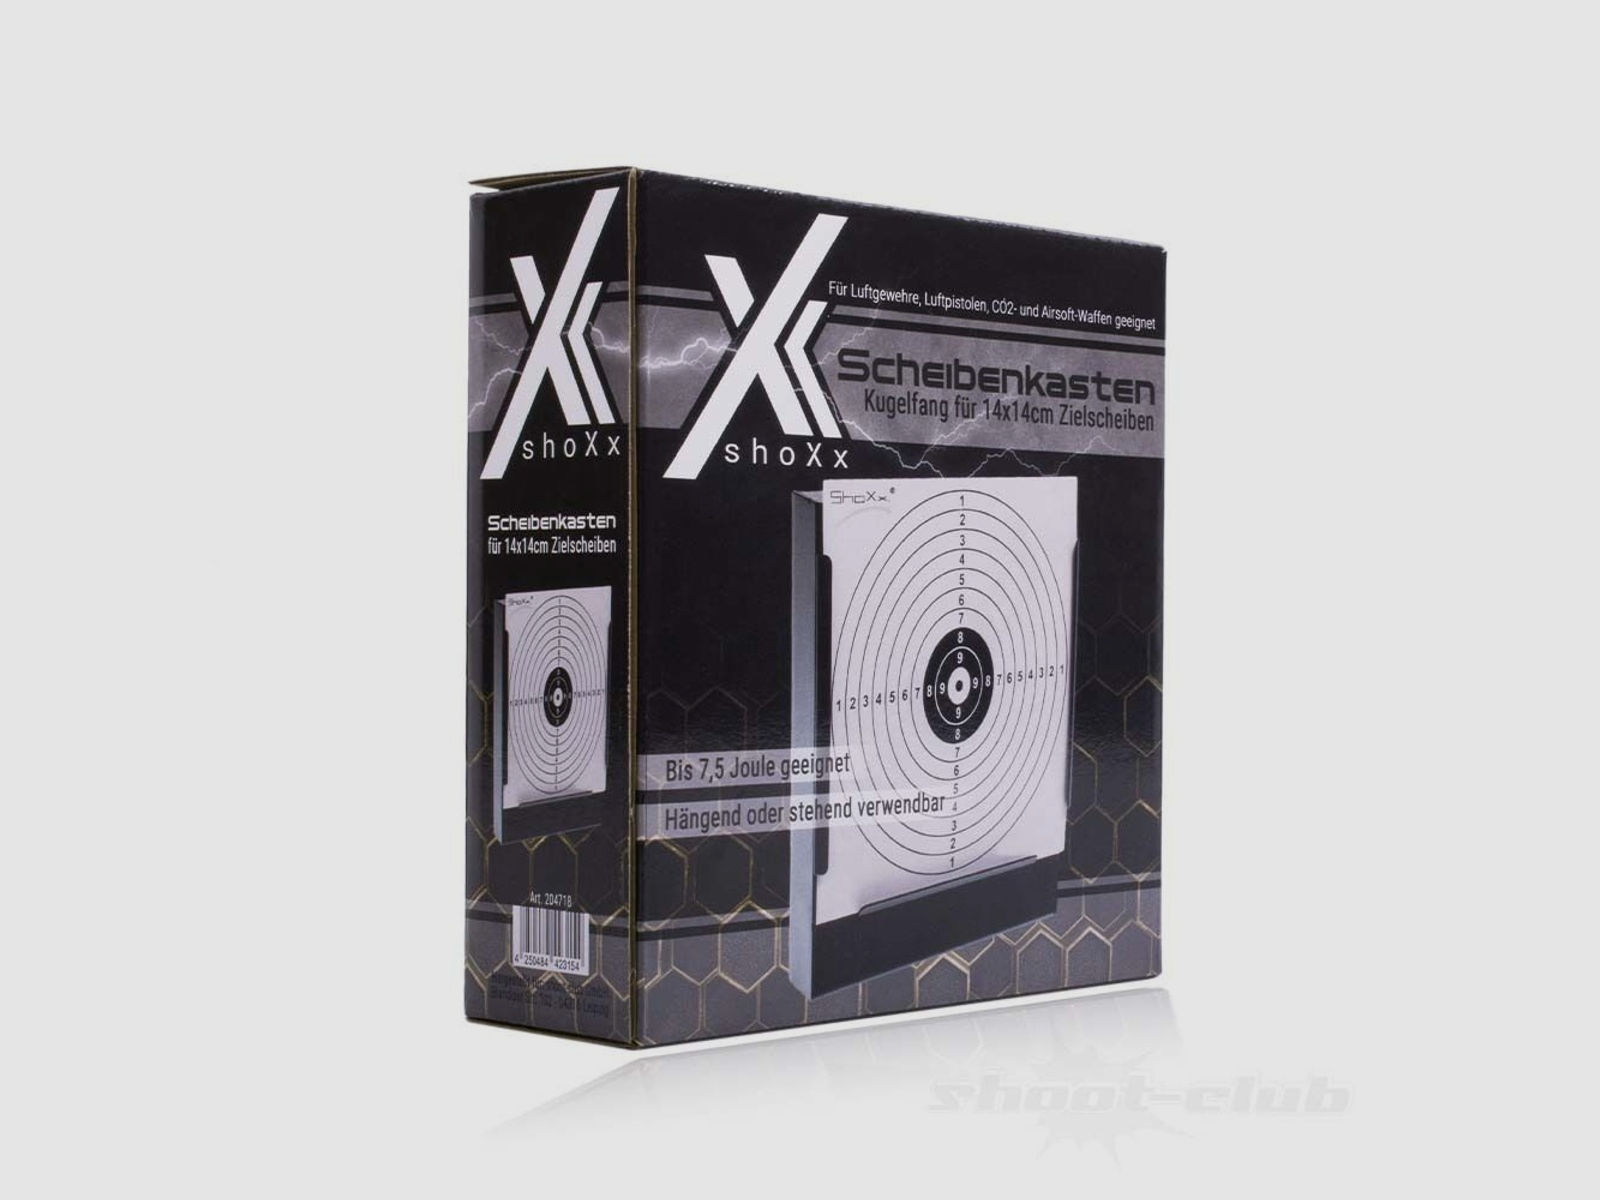 shoXx	 Scheibenkasten - Kugelfang für 14 x 14cm Zielscheiben